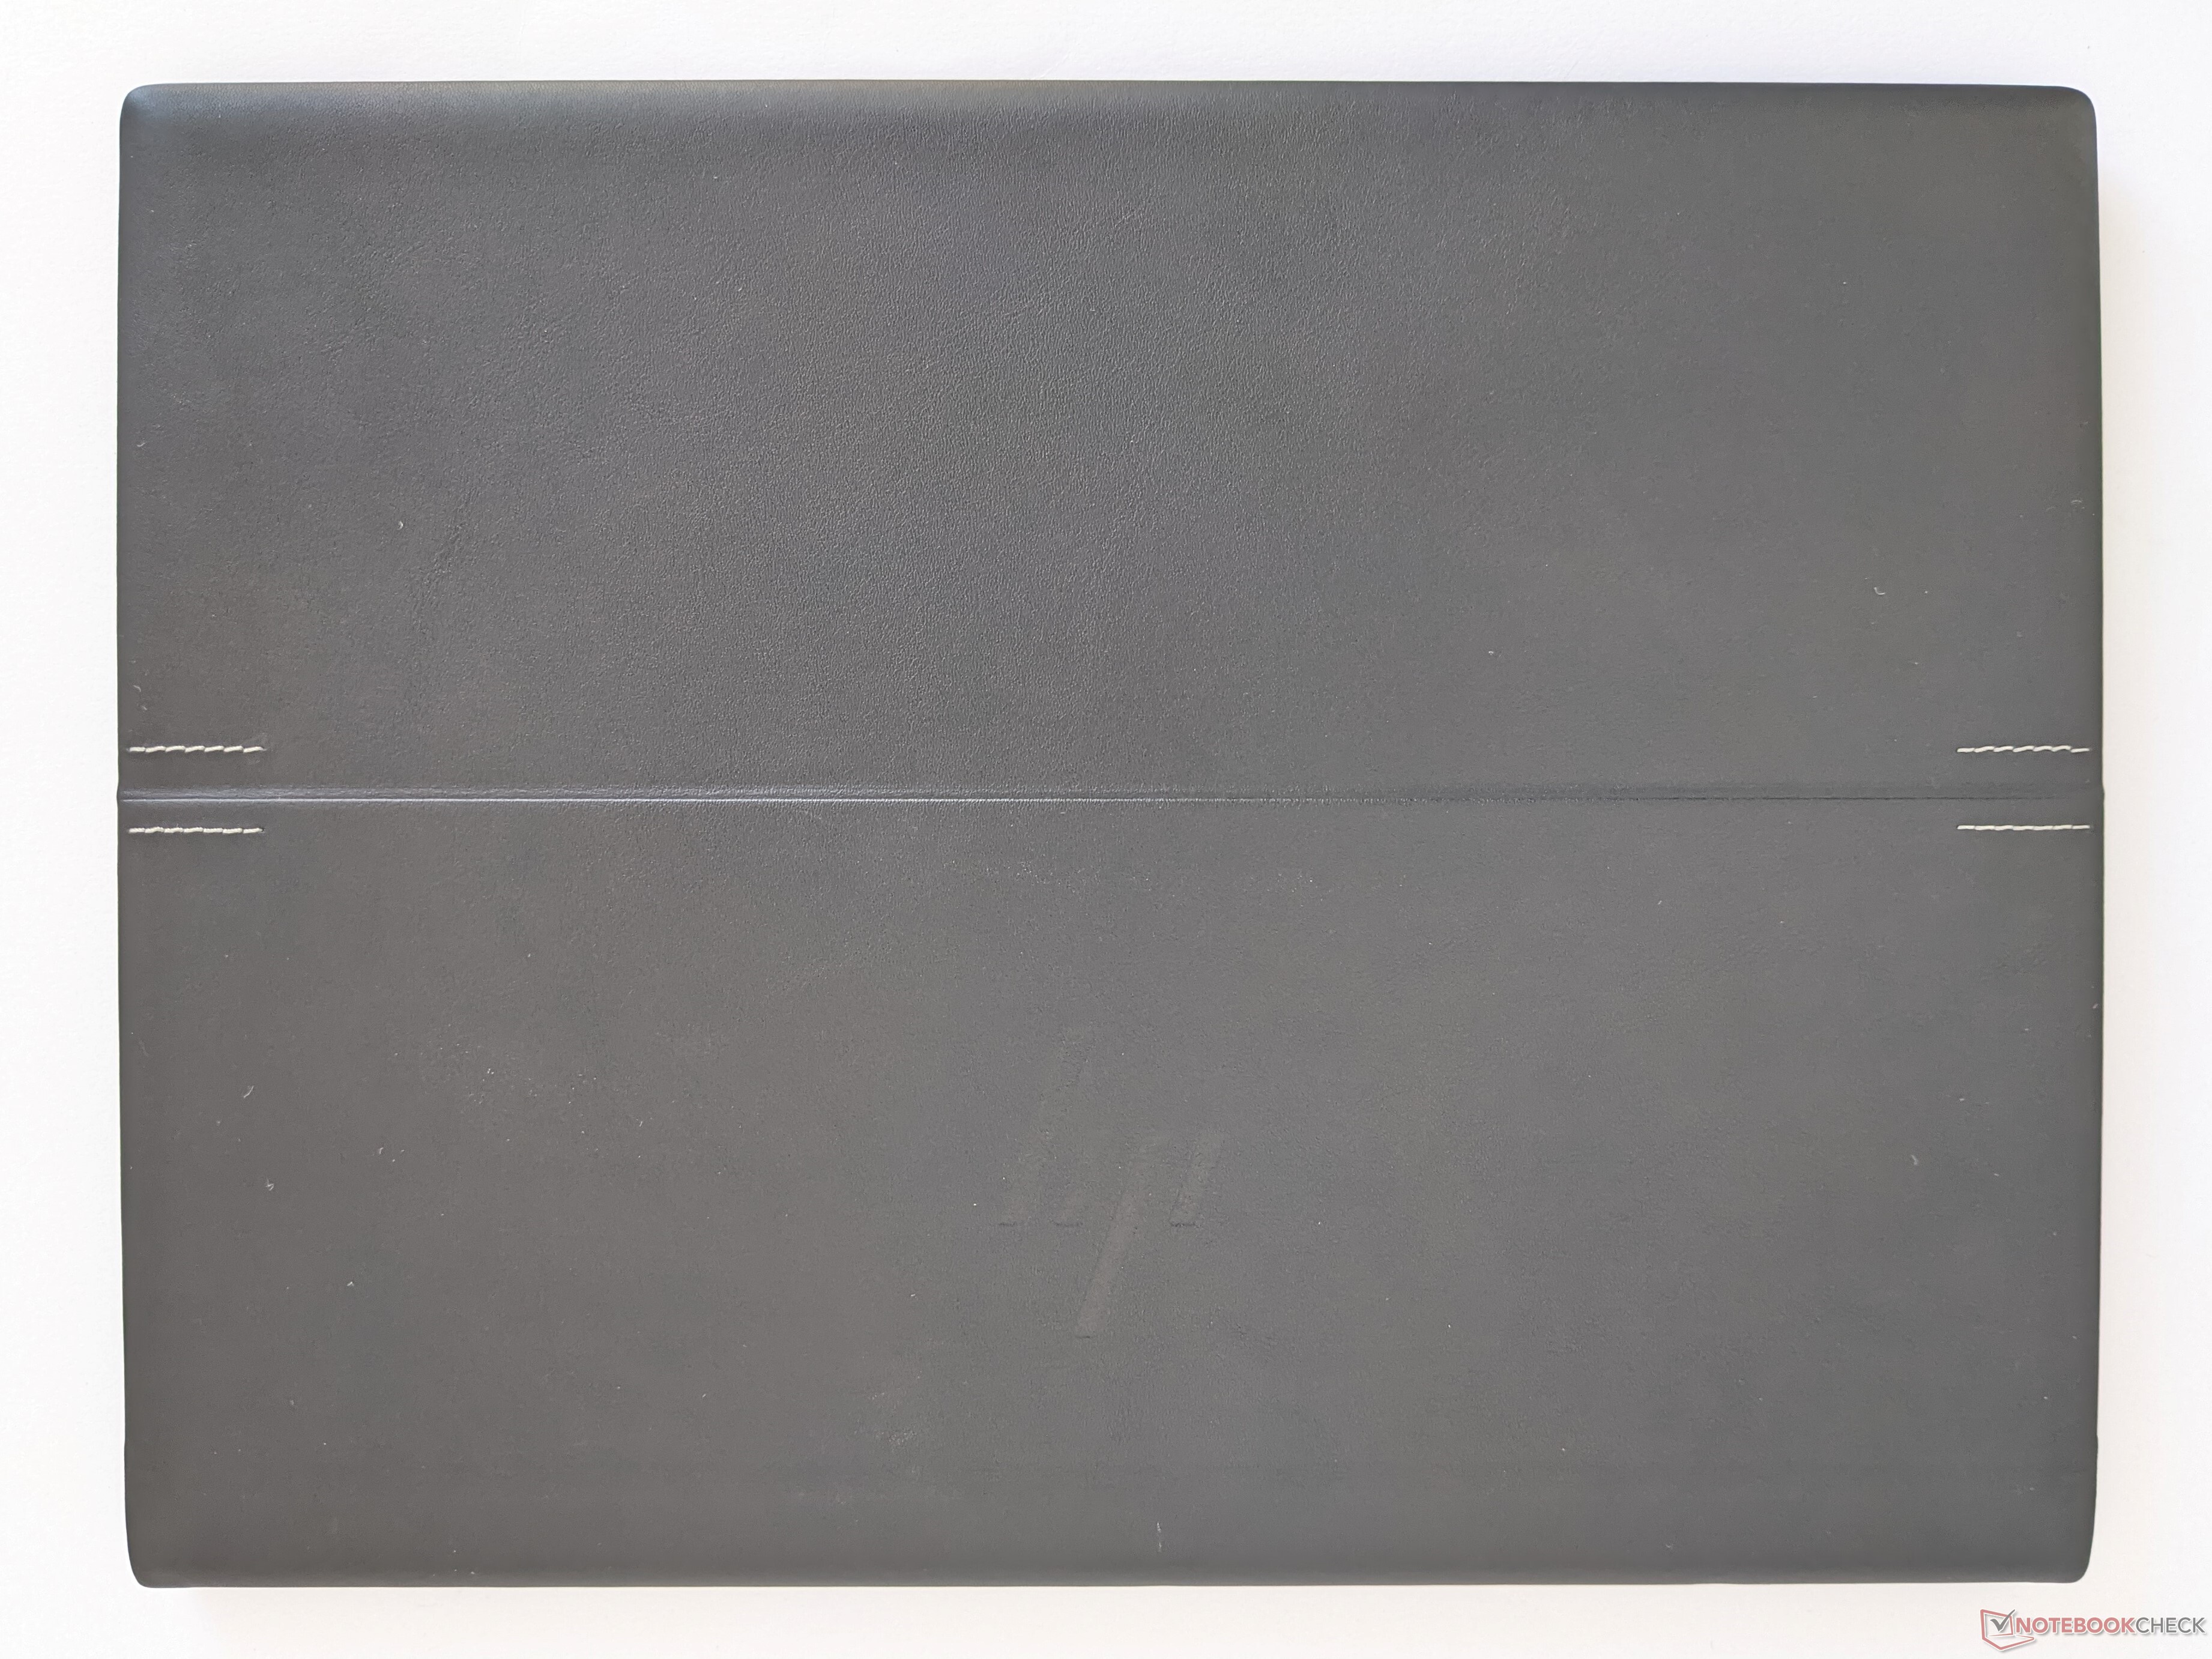 Hp Elitebook Folio 13 5 In Review, Black Leather Photo Album 4×6